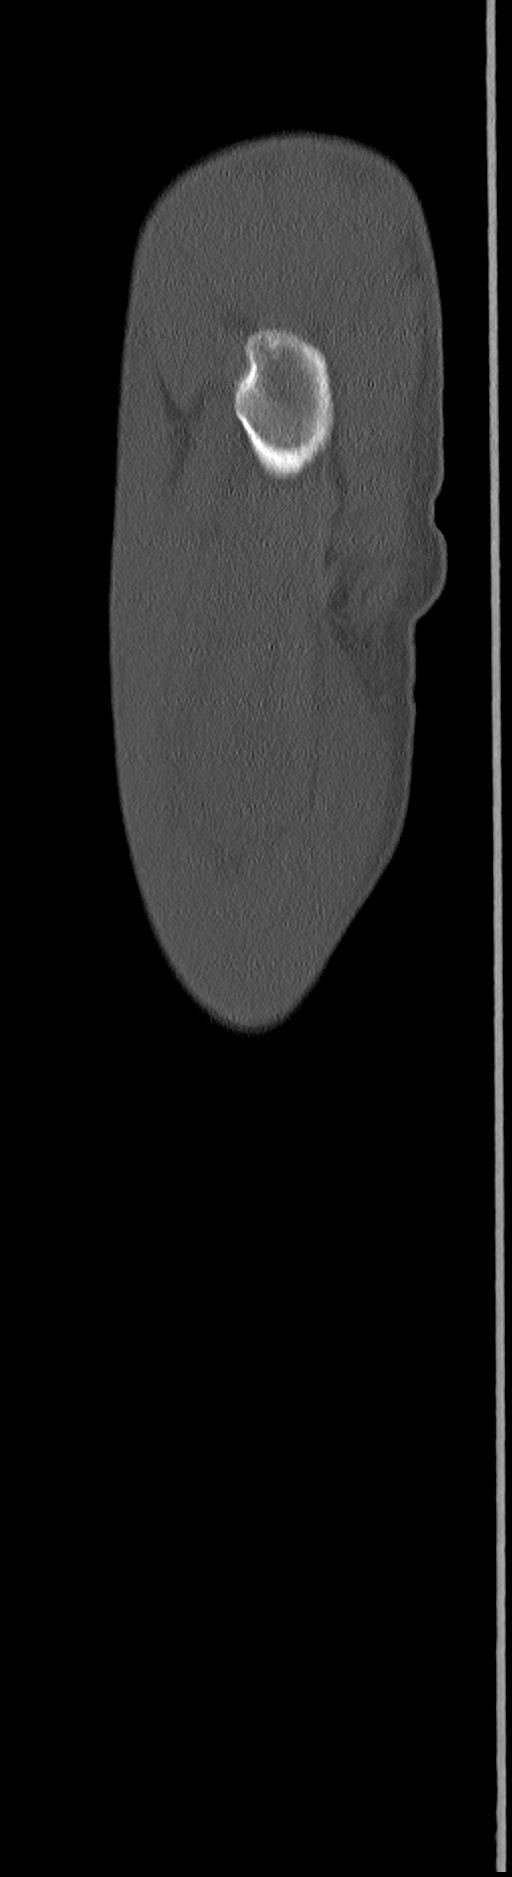 Chronic osteomyelitis (with sequestrum) (Radiopaedia 74813-85822 C 104).jpg